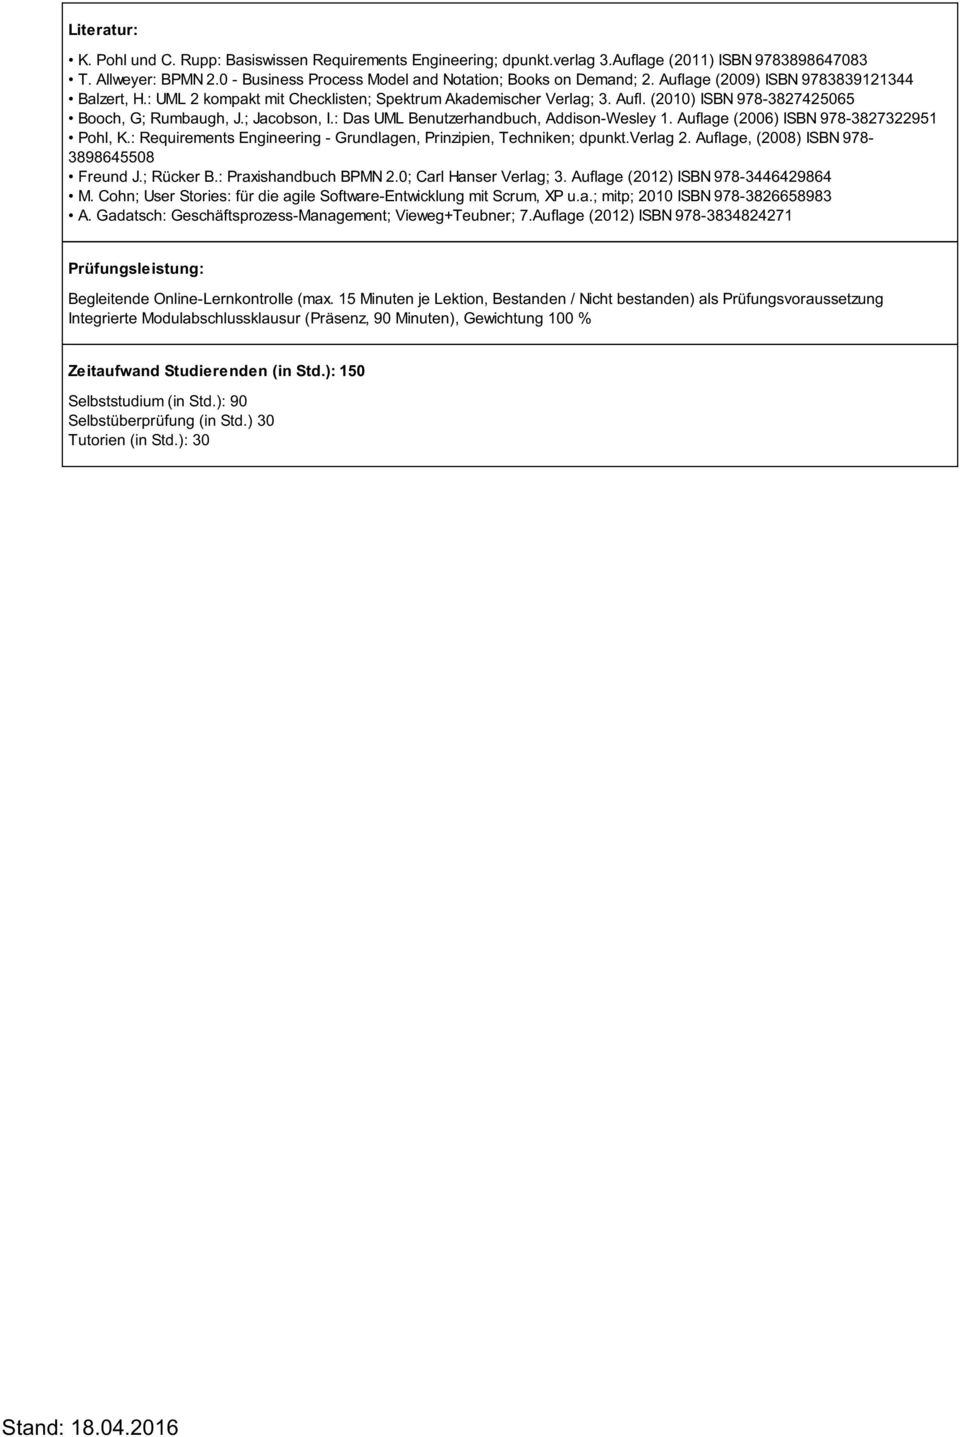 : Das UML Benutzerhandbuch, Addison-Wesley 1. Auflage (2006) ISBN 978-3827322951 Pohl, K.: Requirements Engineering - Grundlagen, Prinzipien, Techniken; dpunkt.verlag 2.